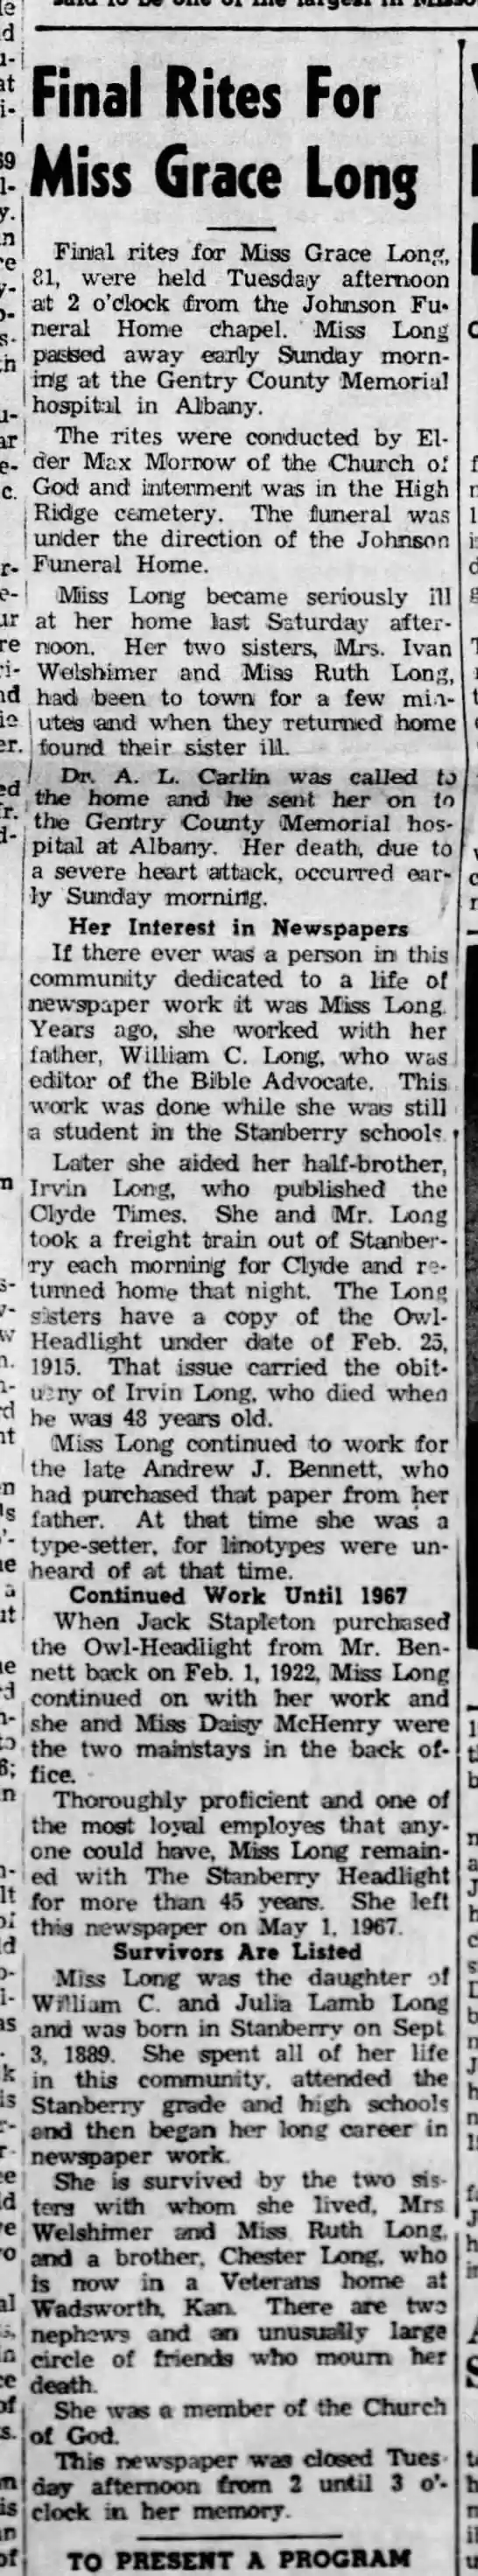 Grace Long obit Headlight Dec 10, 1970, page 1